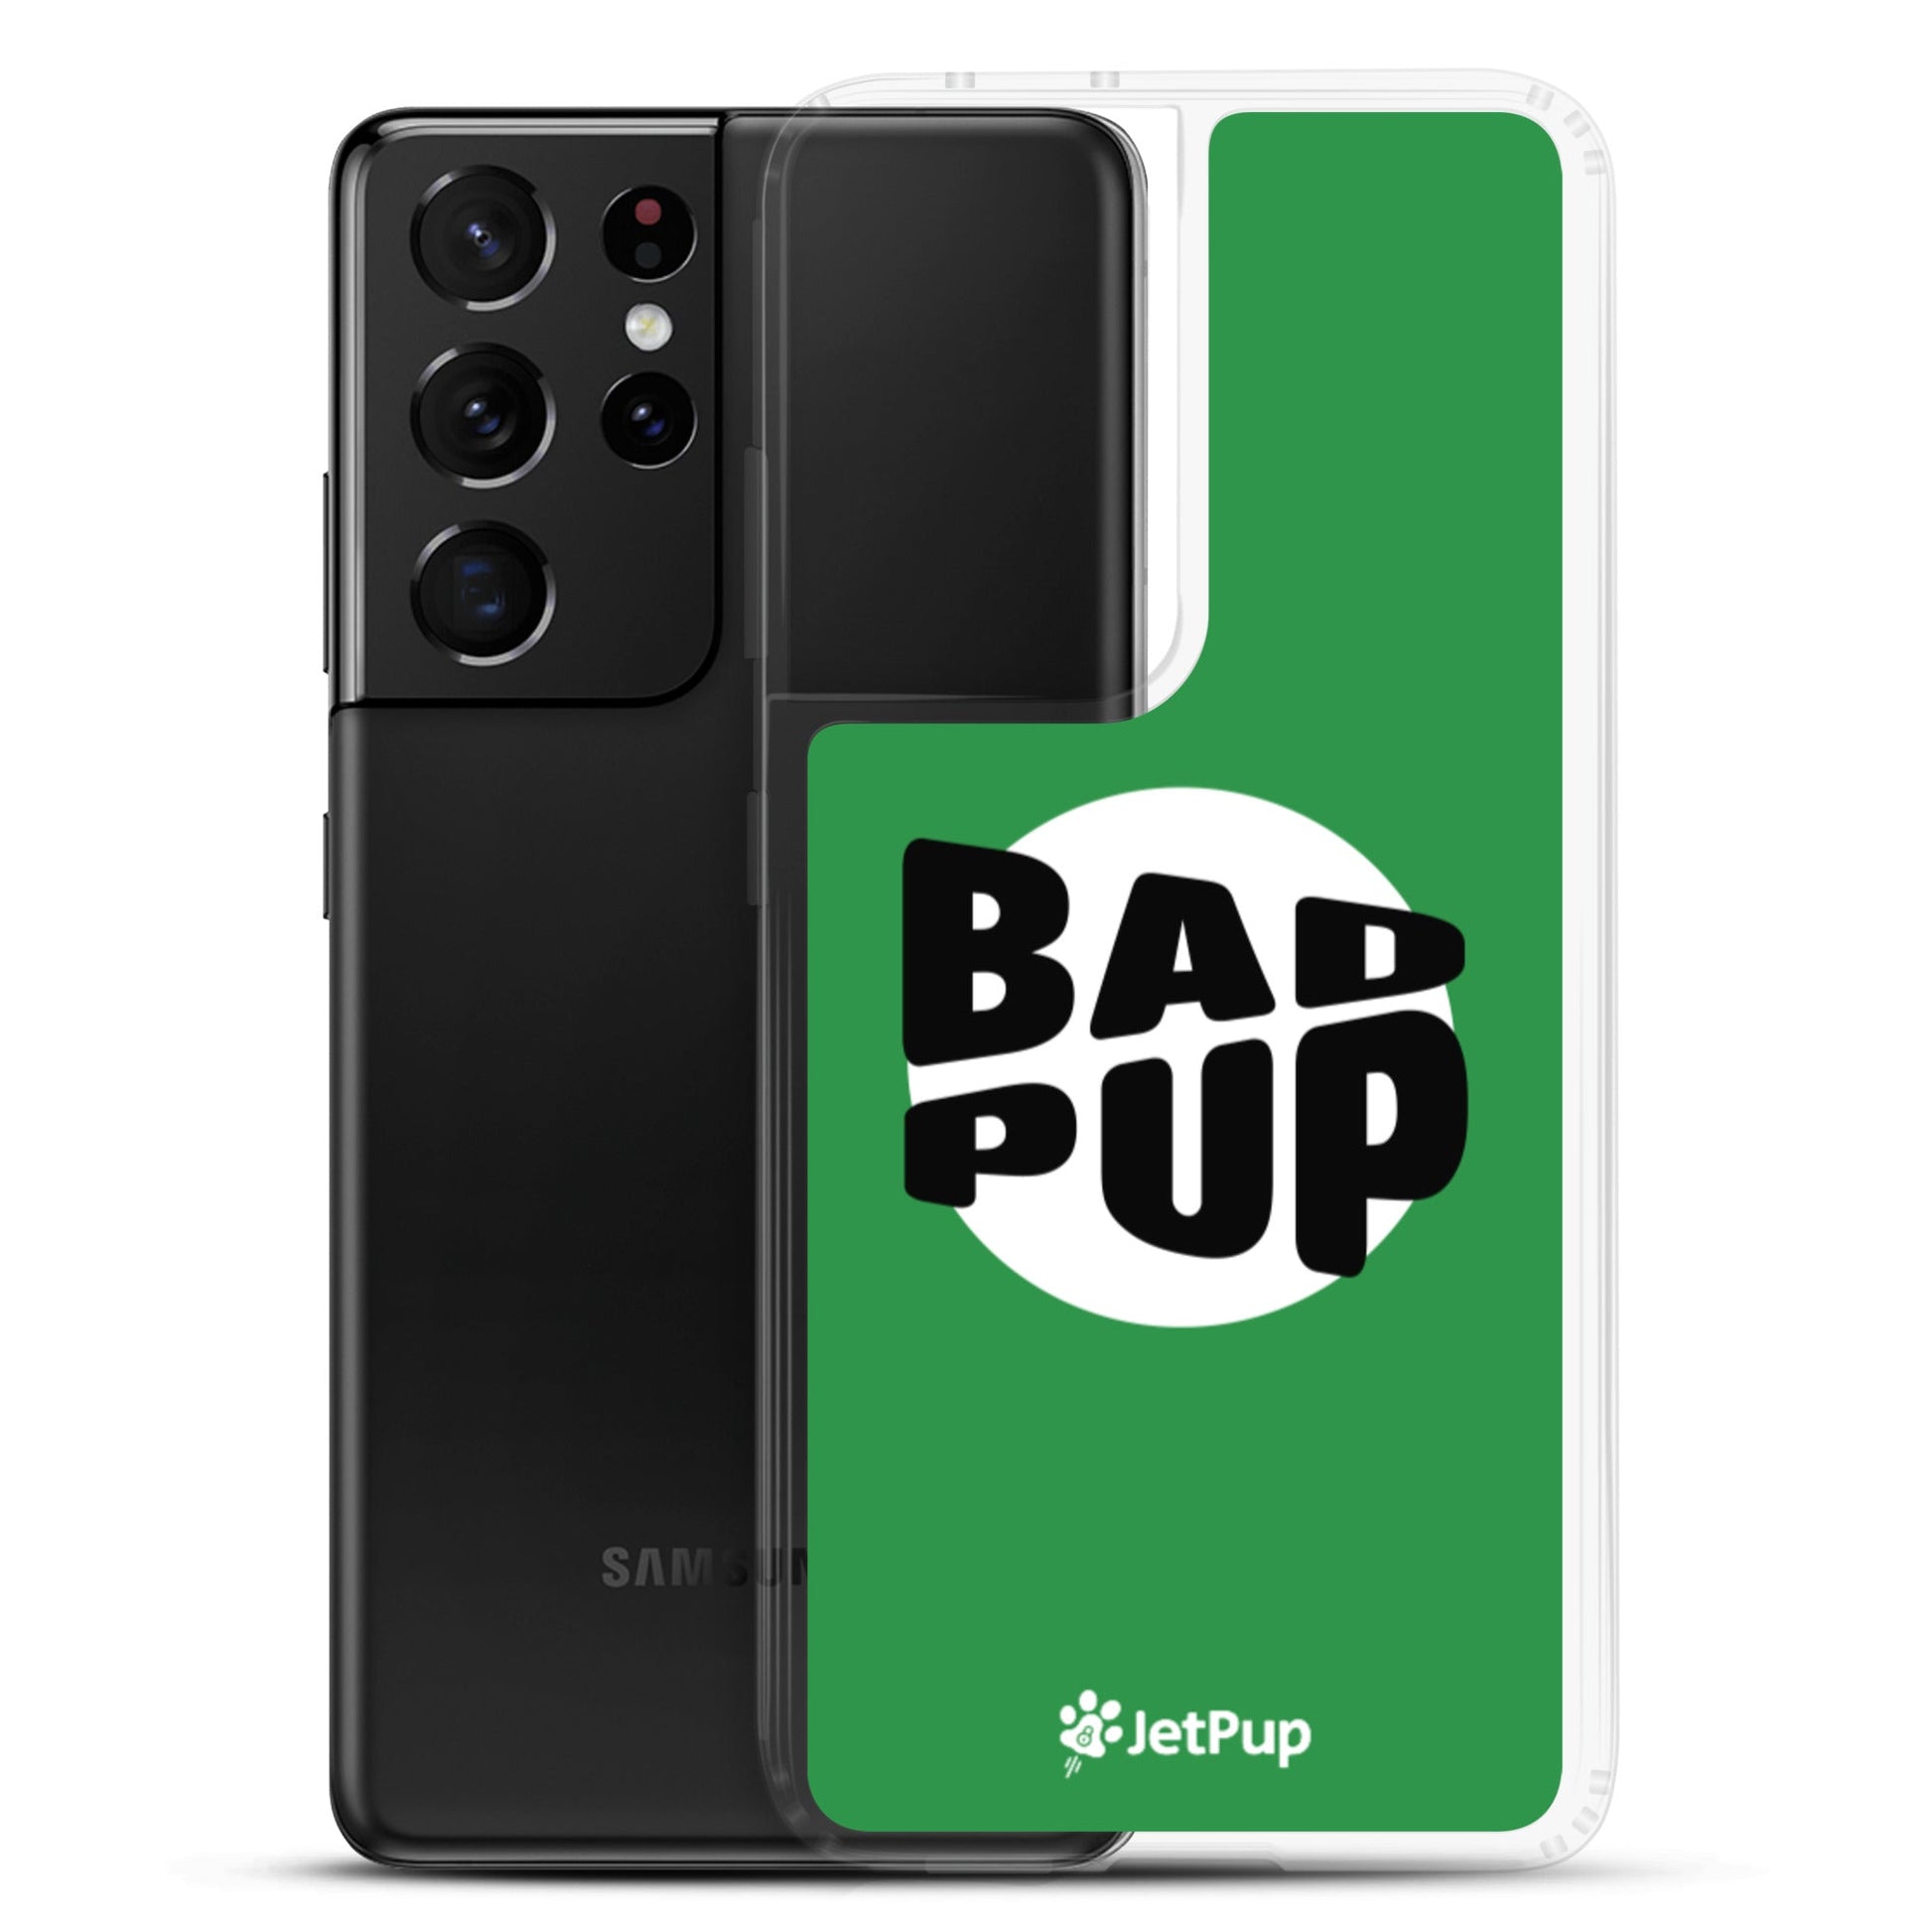 Bad Pup Samsung Case - Green - JetPup